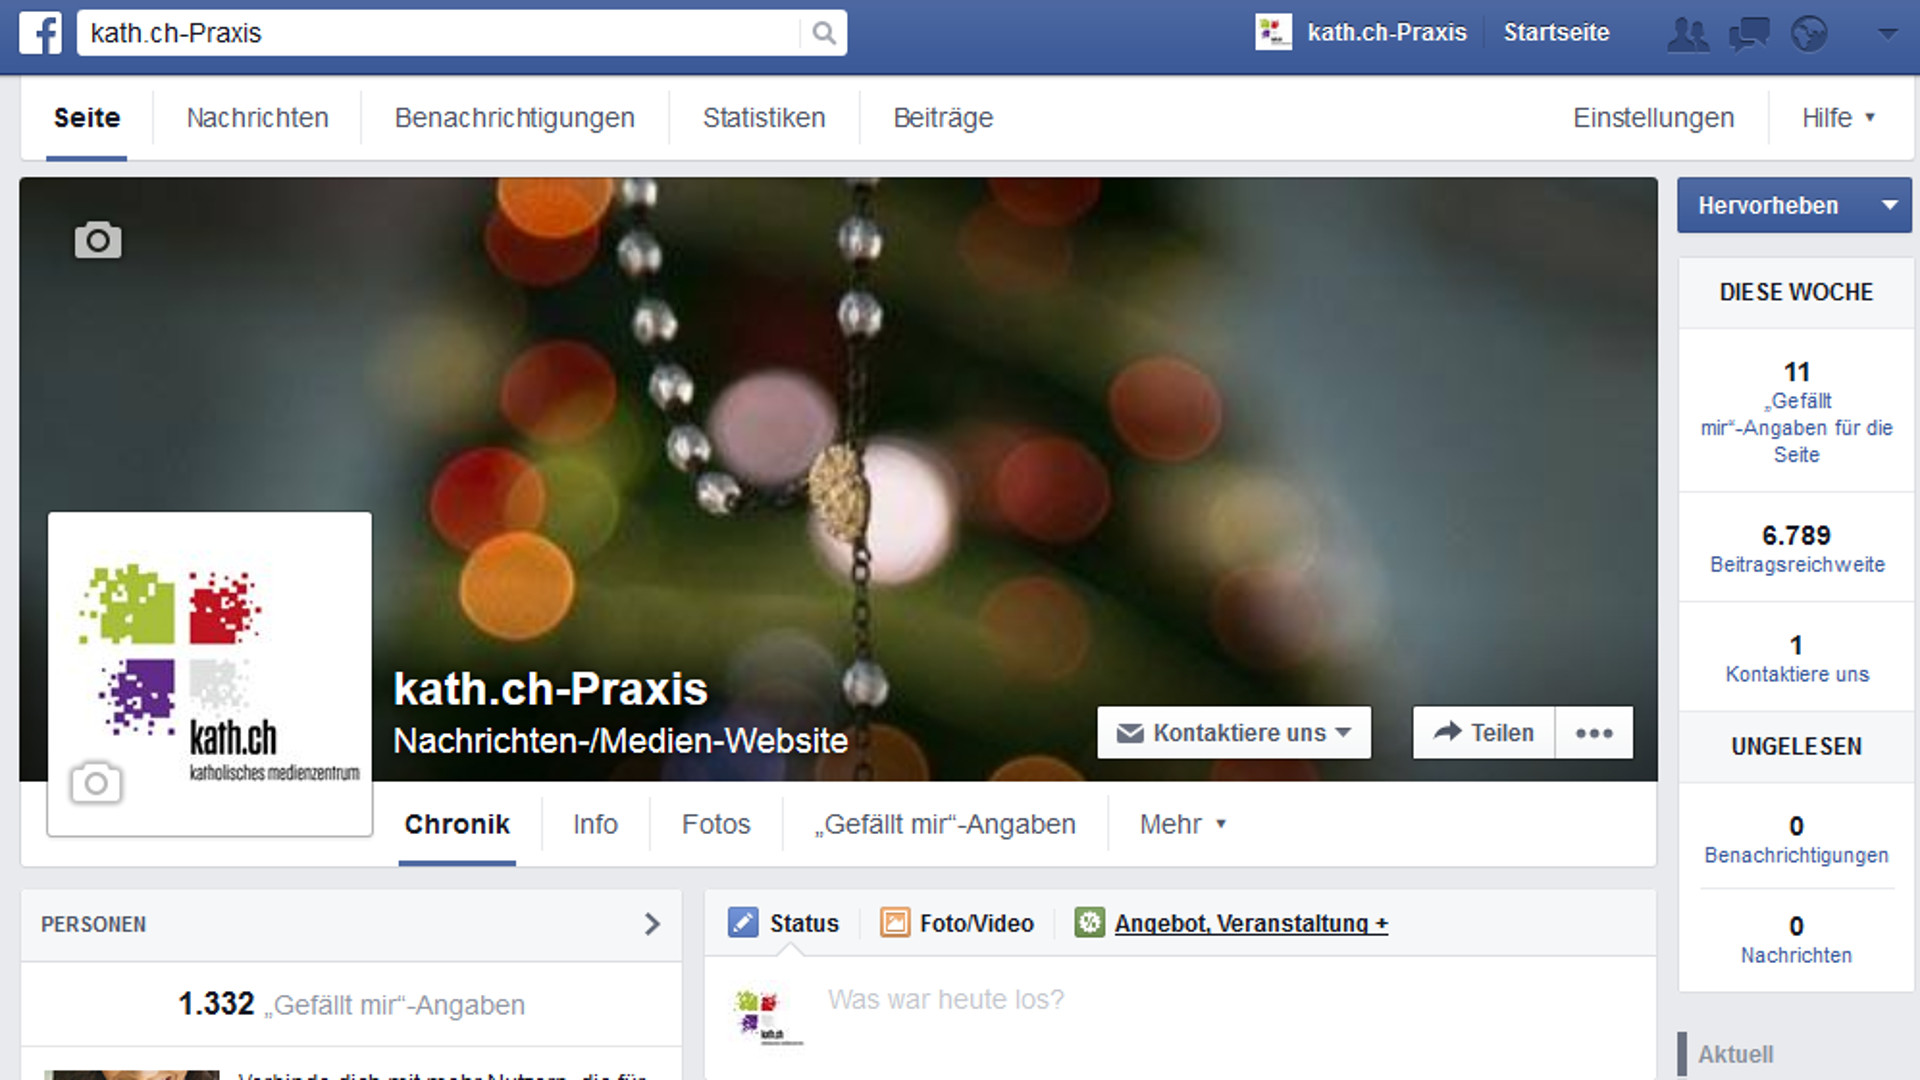 Facebook-Profil von kath.ch